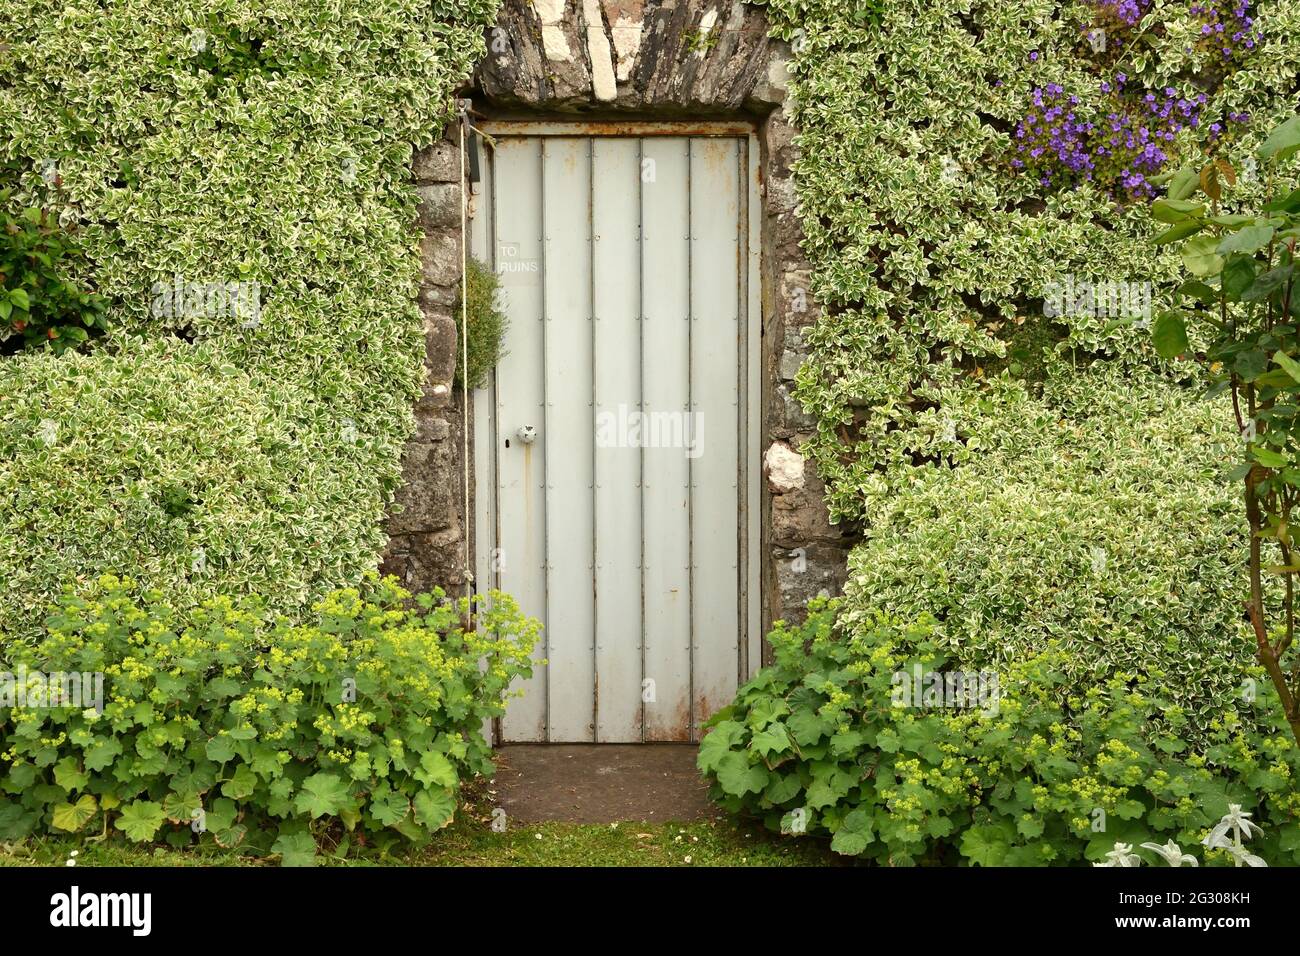 A doorway in a walled garden at Ardchattan Priory Gardens, Oban, Scotland Stock Photo